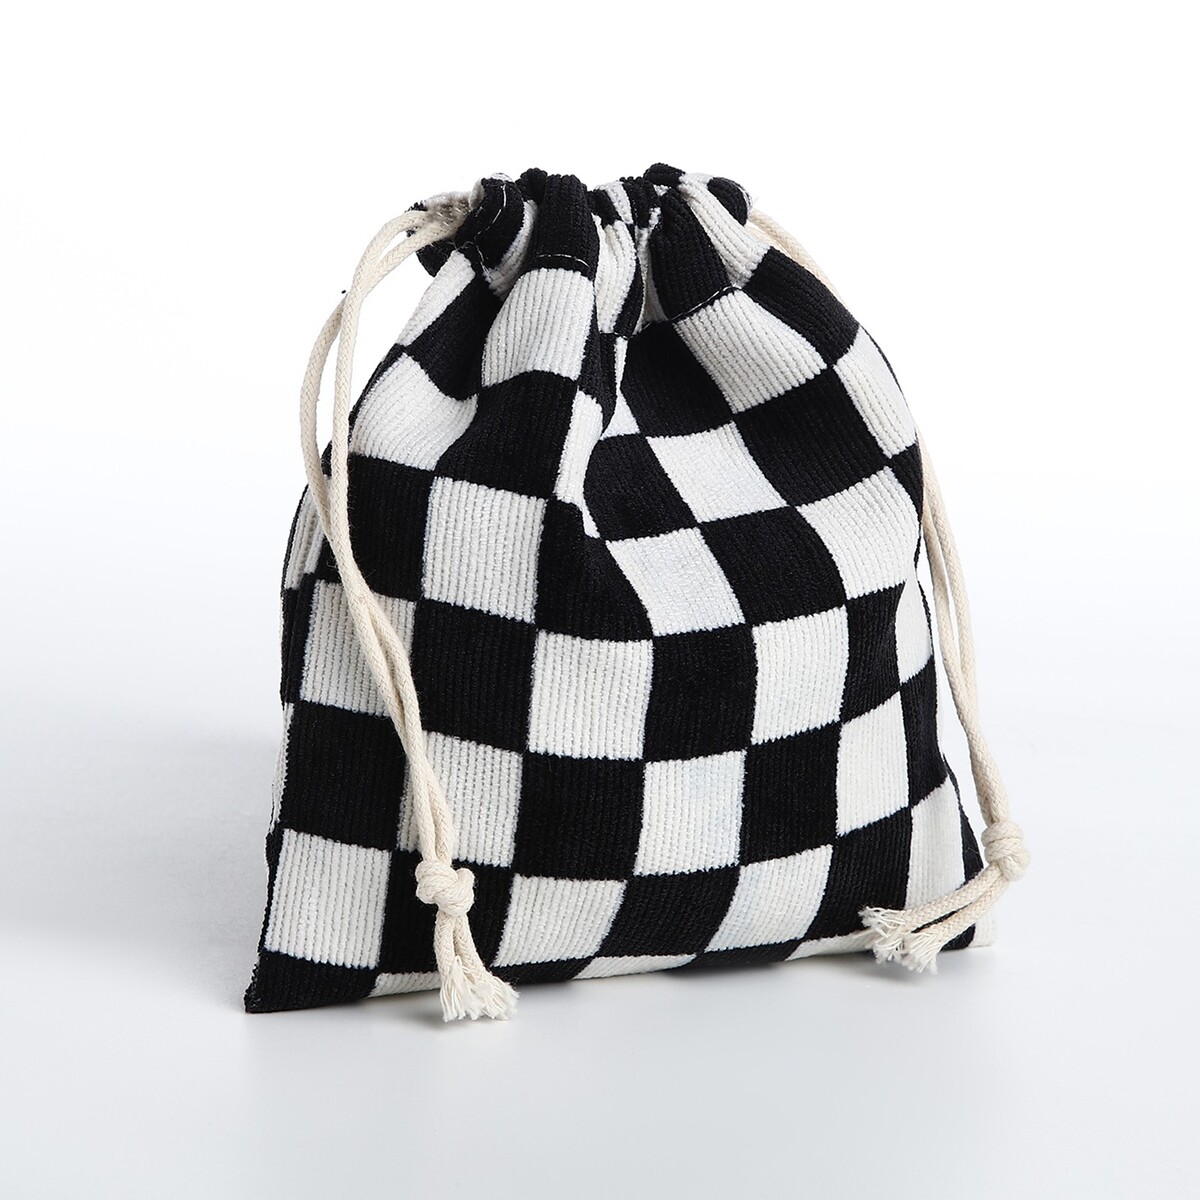 Косметичка - мешок с завязками, цвет белый/черный косметичка мешок с завязками горчичный